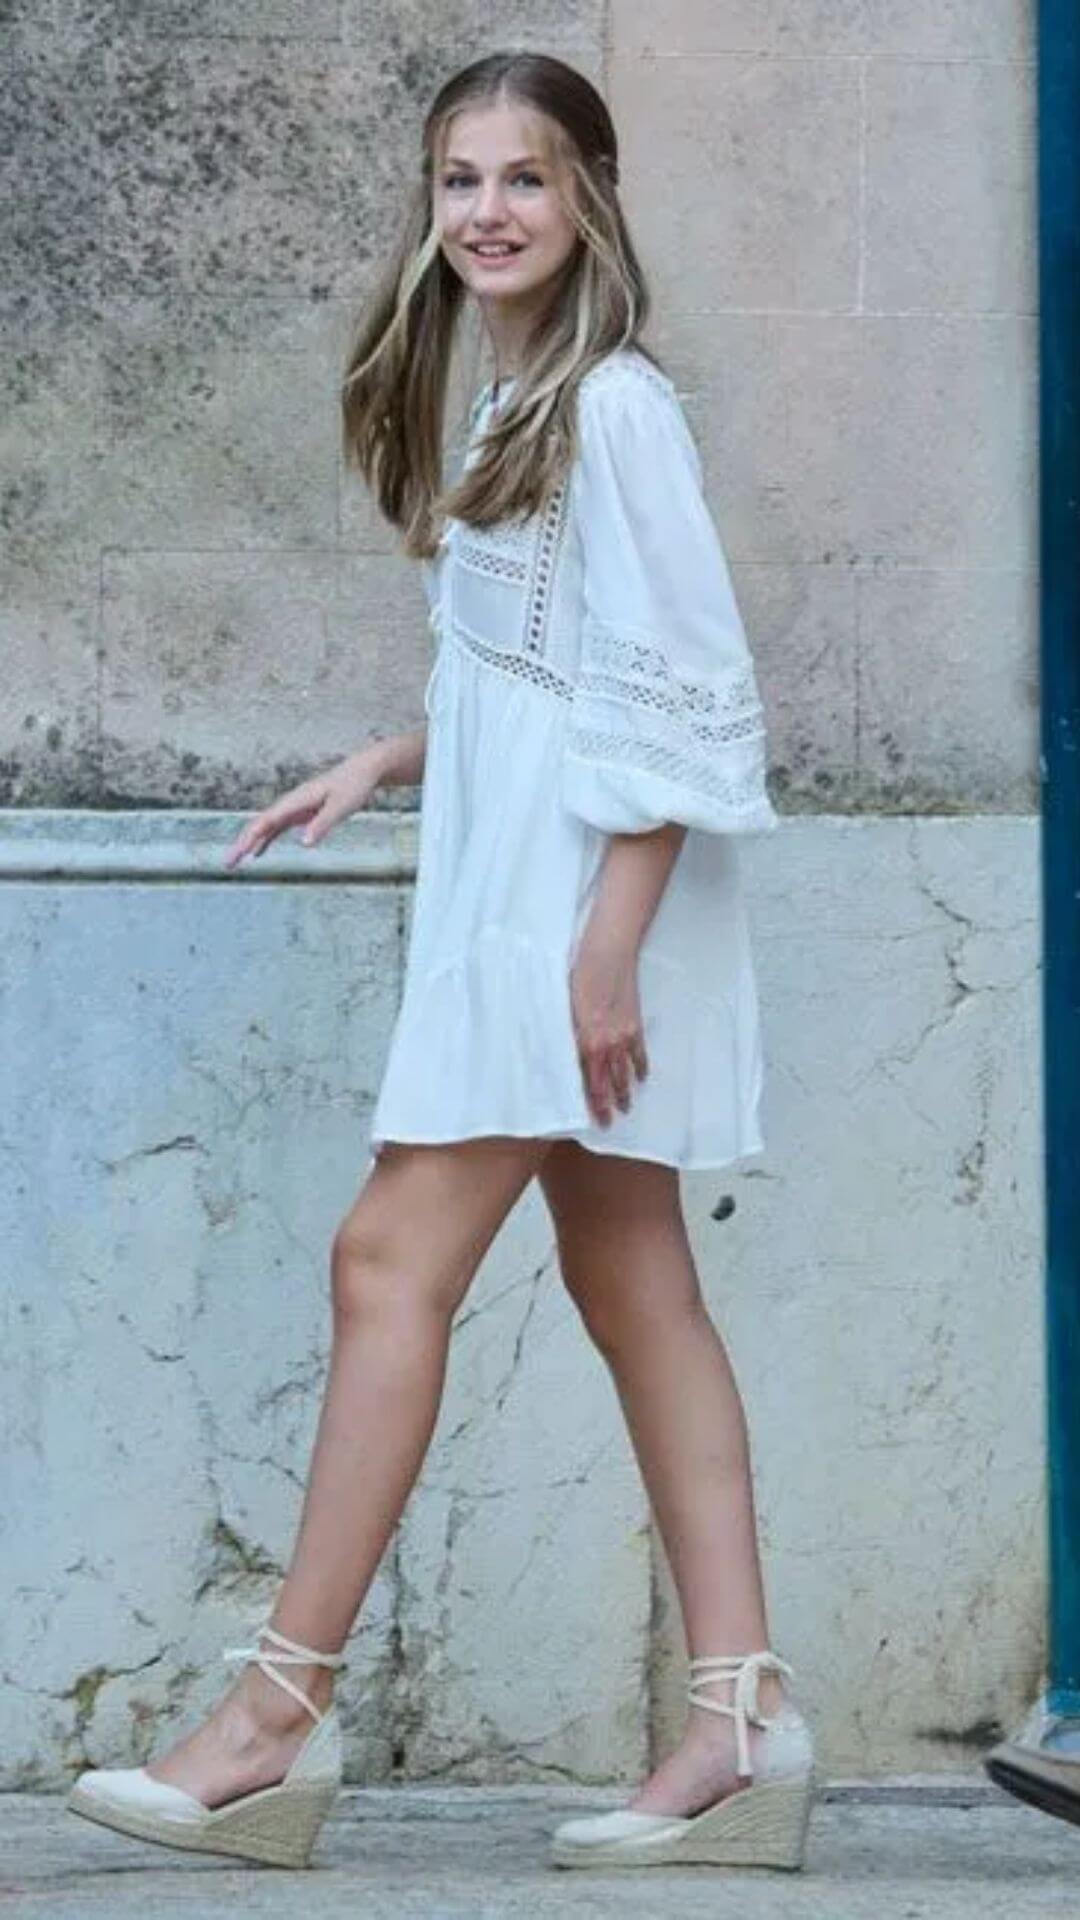 Princess Leonor wearing a white lace dress